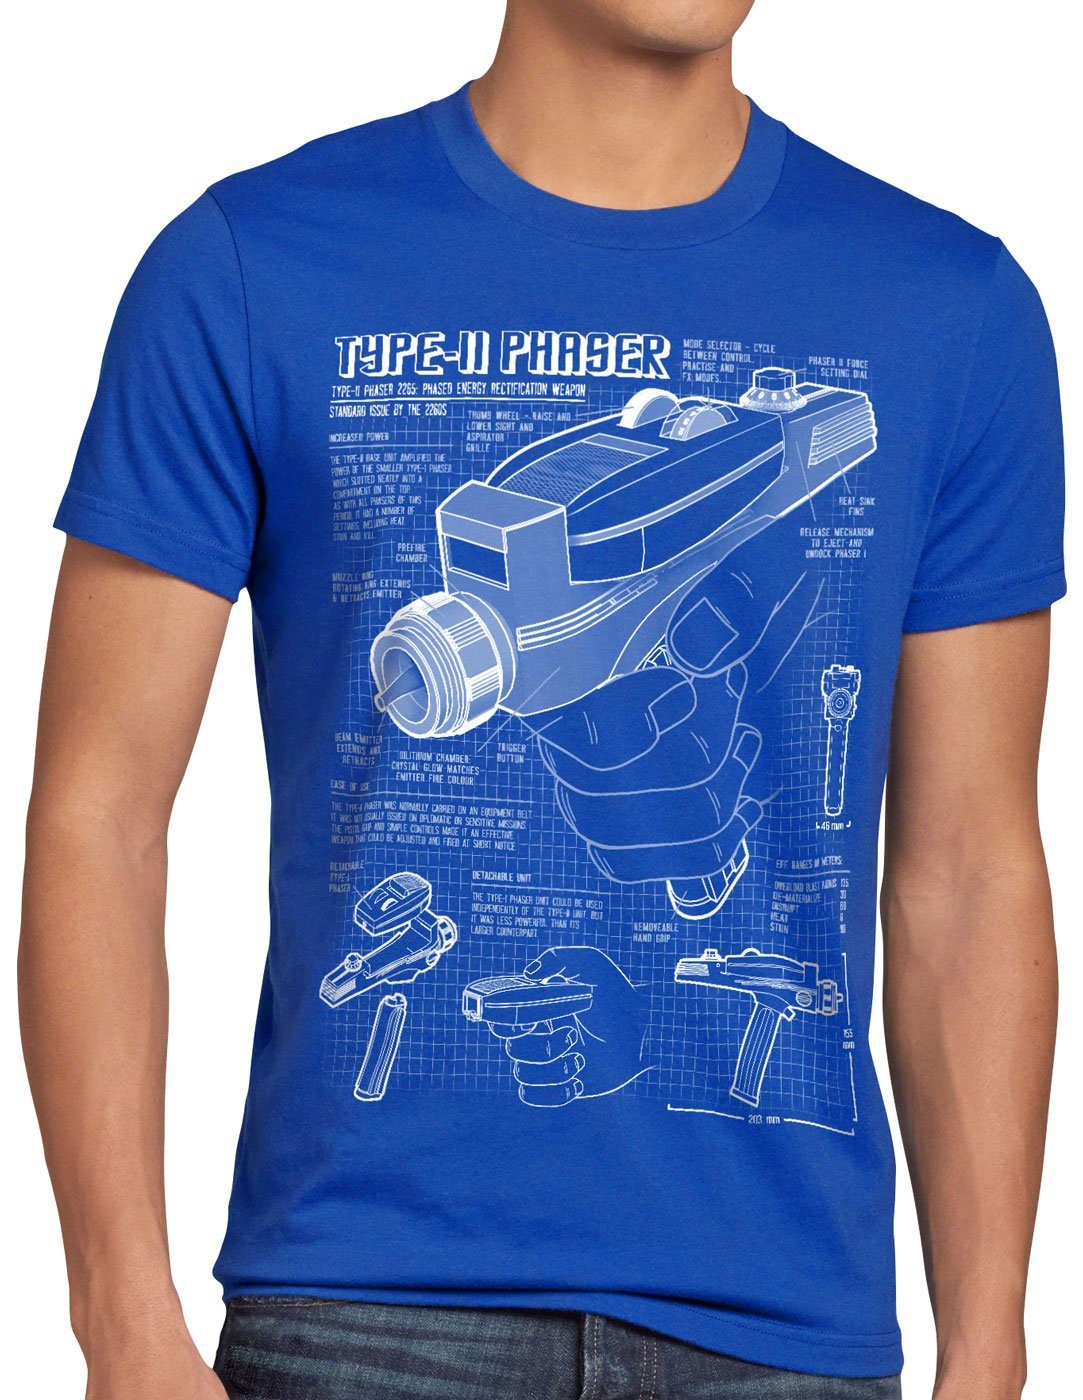 Print-Shirt T-Shirt trekkie style3 Herren Phaser 2265 star NCC-1701 trek Blaupause